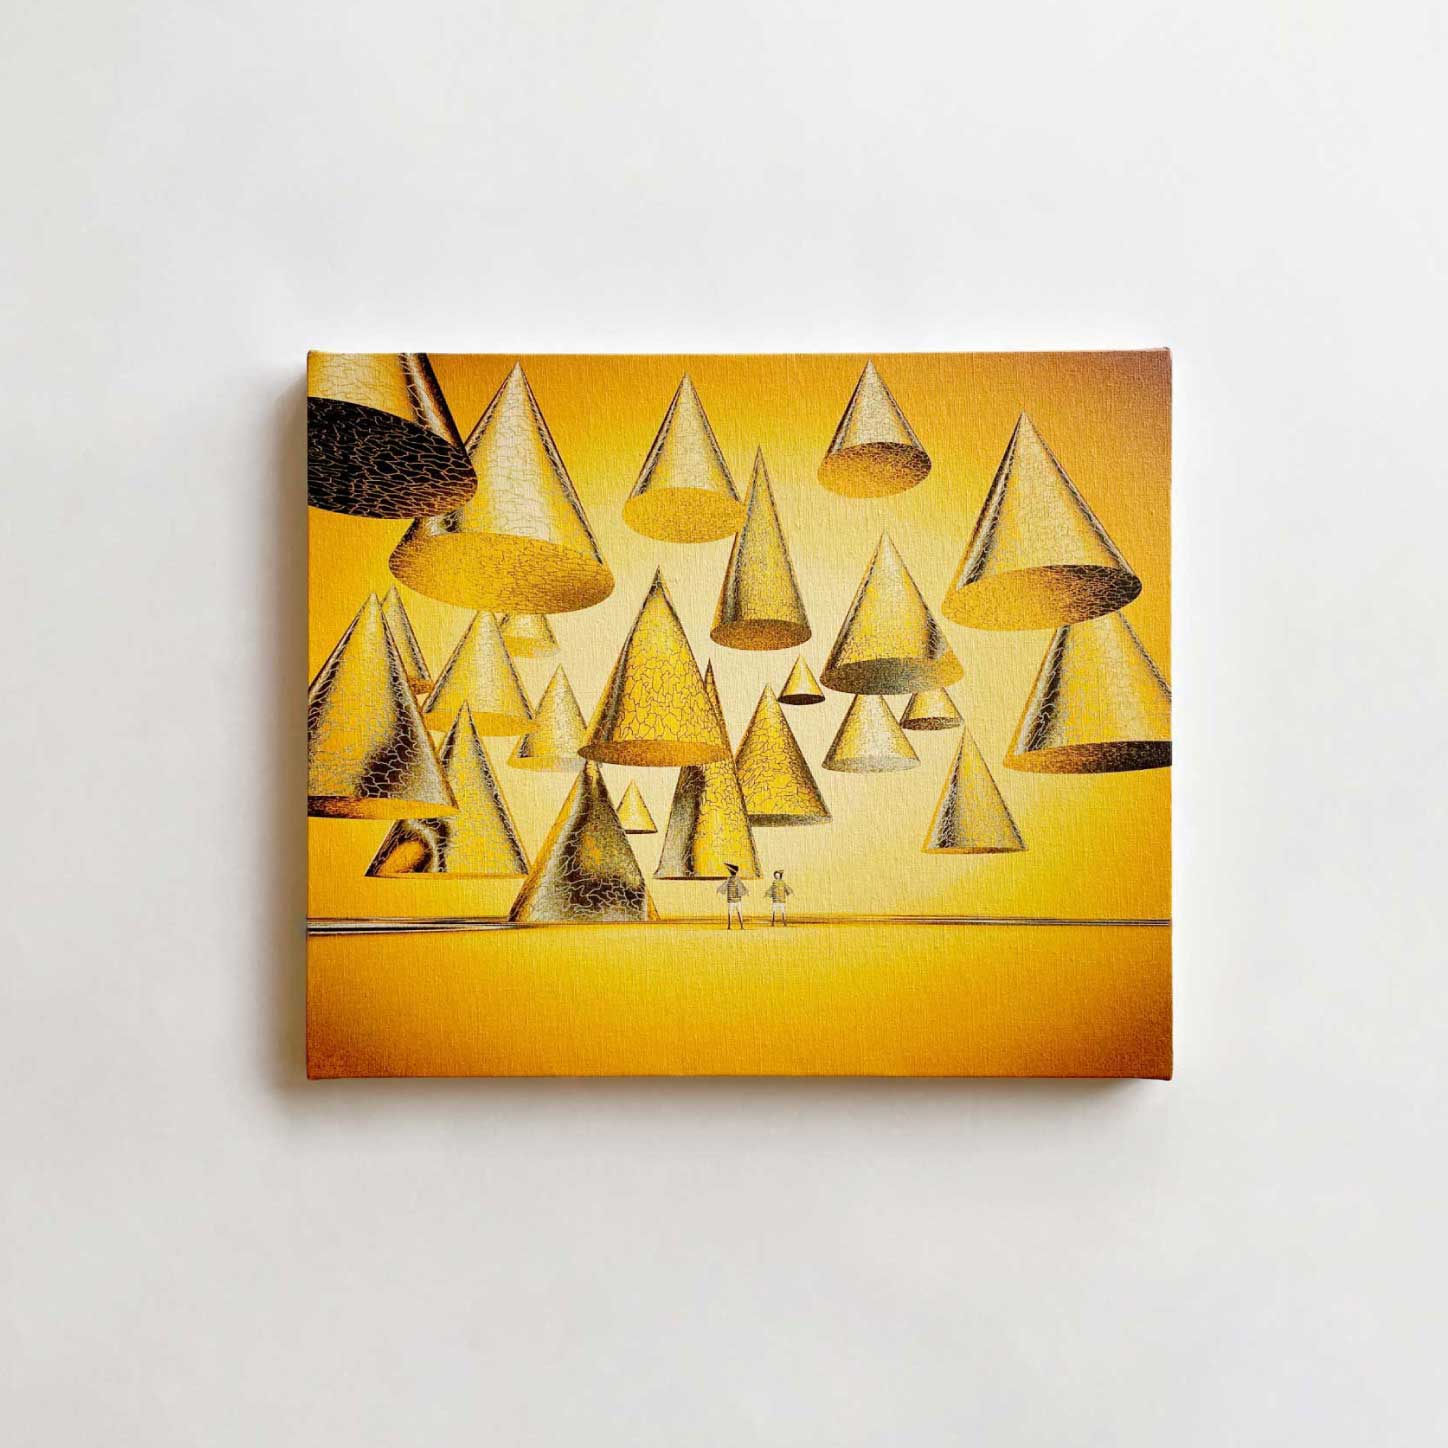 キャンバスプリントに仕上げた黄金色の風景画「First Visit」をOnline Storeにて販売します。 Atsushigraph